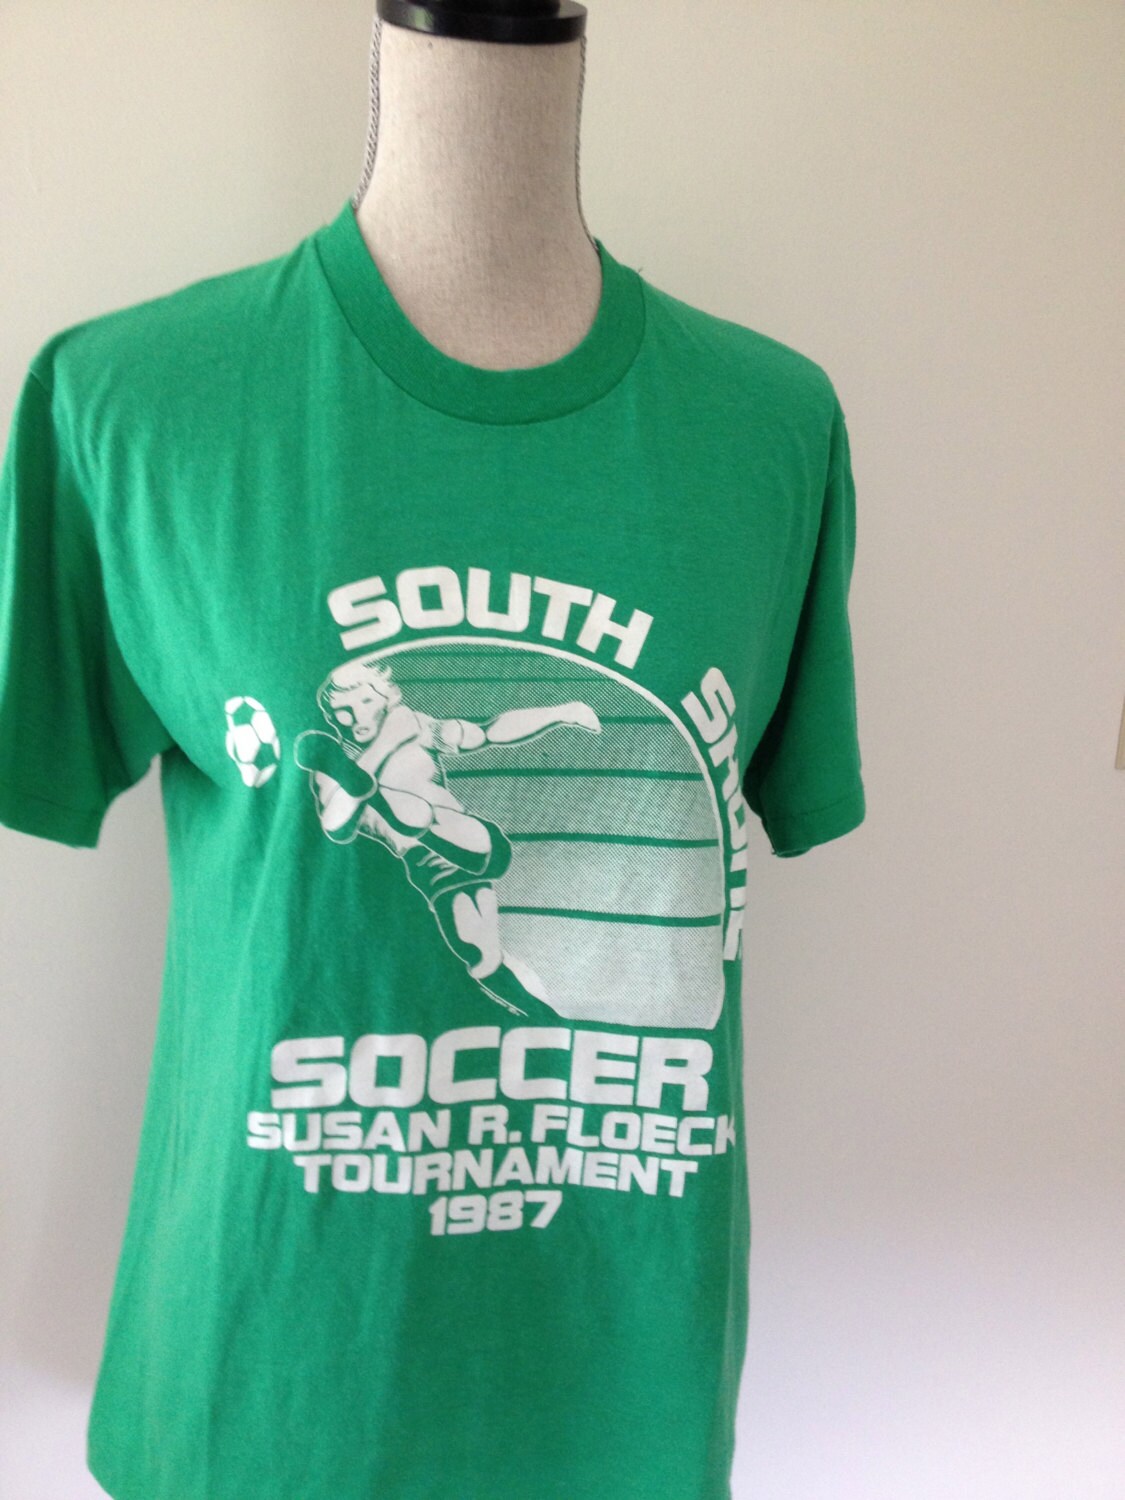 Vintage Soccer Tshirts | Etsy